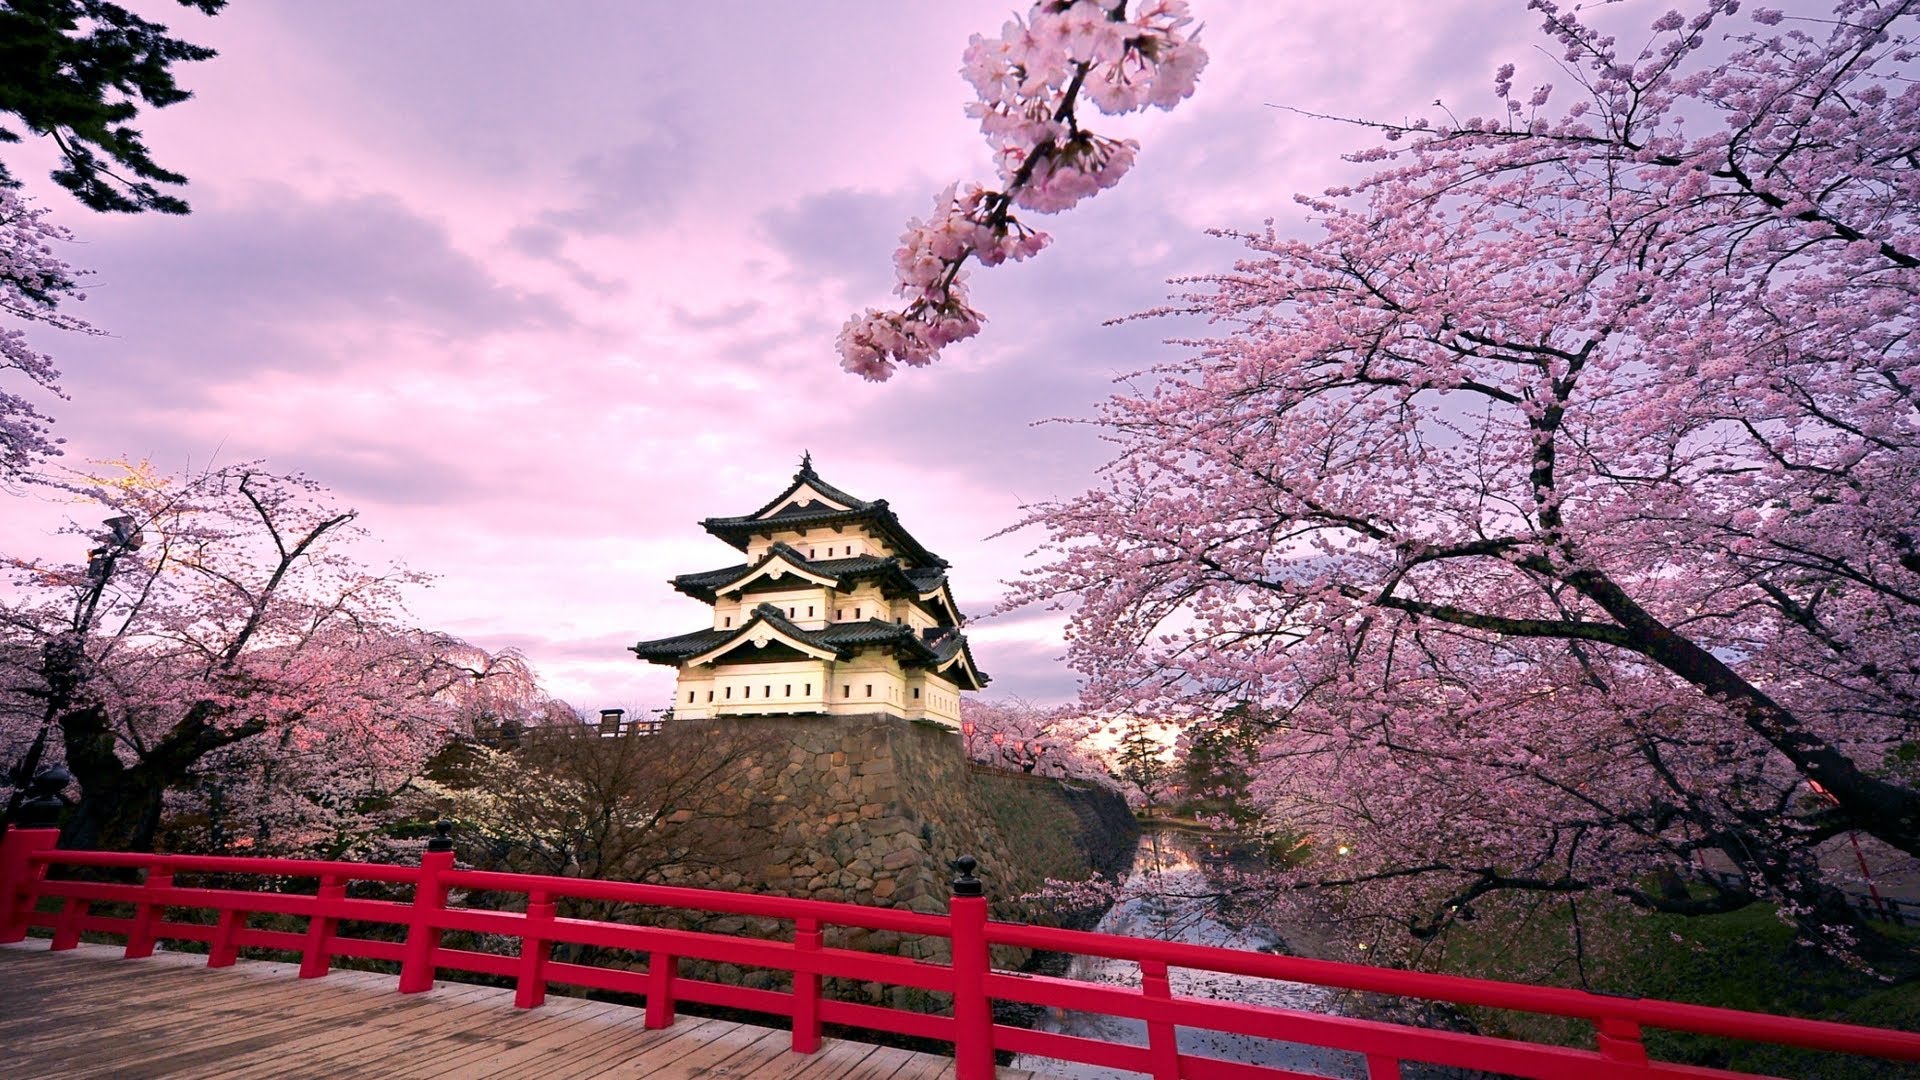 Không cần tốn quá nhiều tiền để du lịch đến Nhật Bản. Hãy tham gia trong loạt ảnh về tài chính và du lịch Nhật Bản của chúng tôi và cùng trải nghiệm vẻ đẹp của xứ sở hoa anh đào. Được cập nhật thường xuyên và miễn phí, đây là cơ hội để bạn thưởng thức cảm giác đang được du lịch nhưng lại không phải tốn kém quá nhiều!